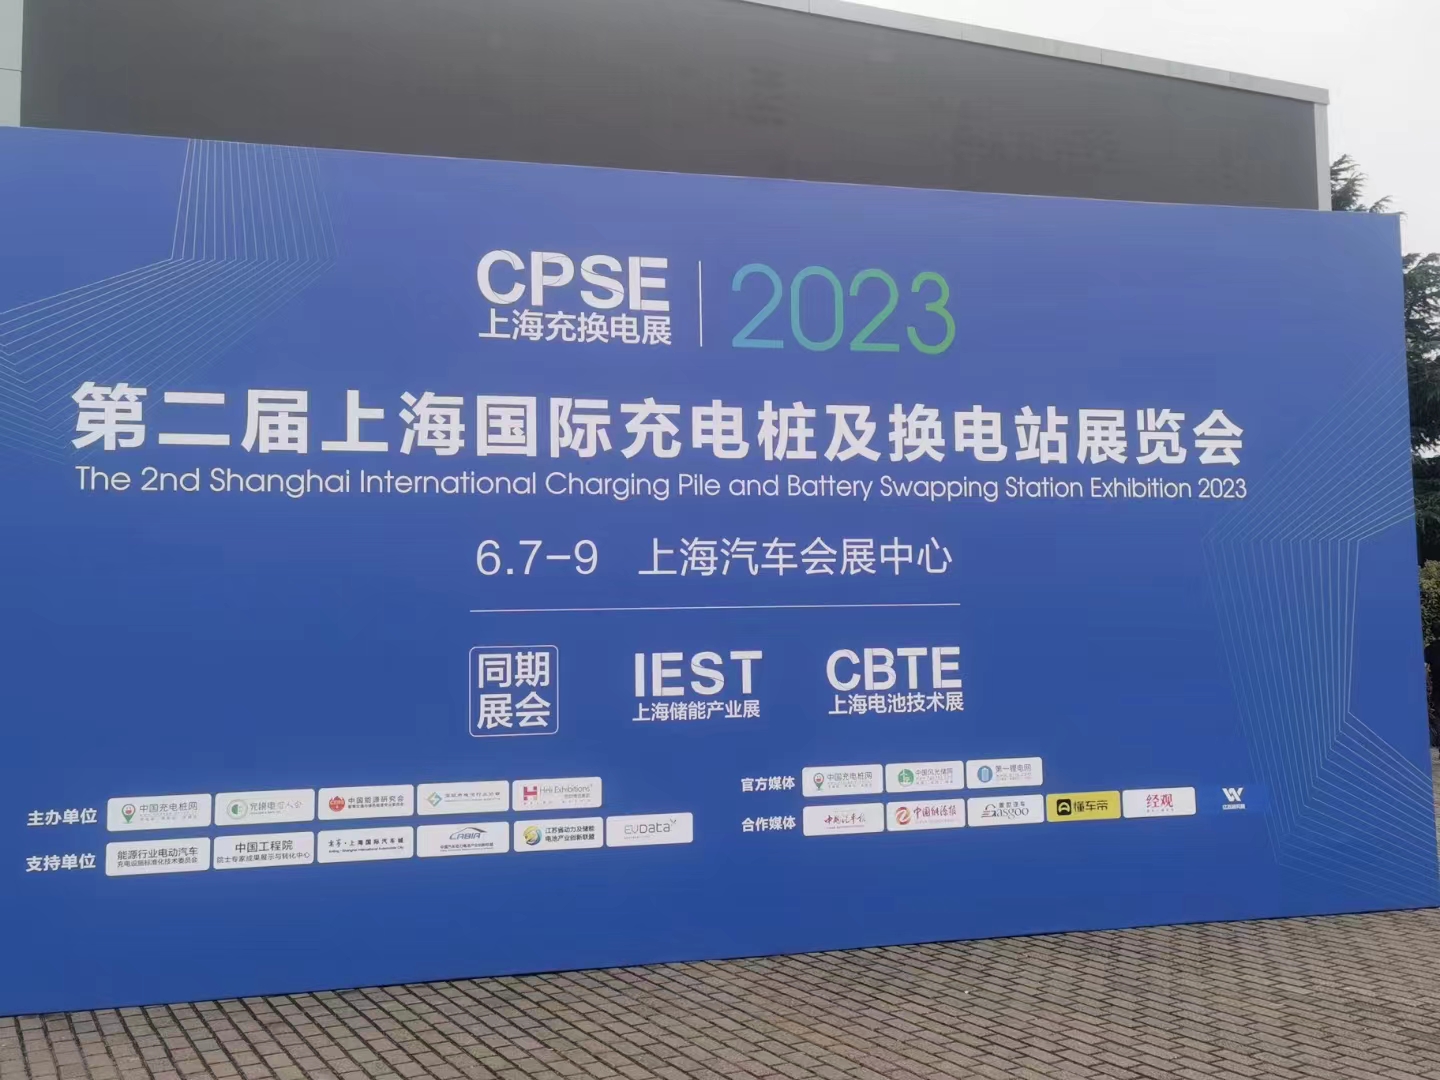 德尔电子参加2023CPES上海国际充电桩及换电站展览会